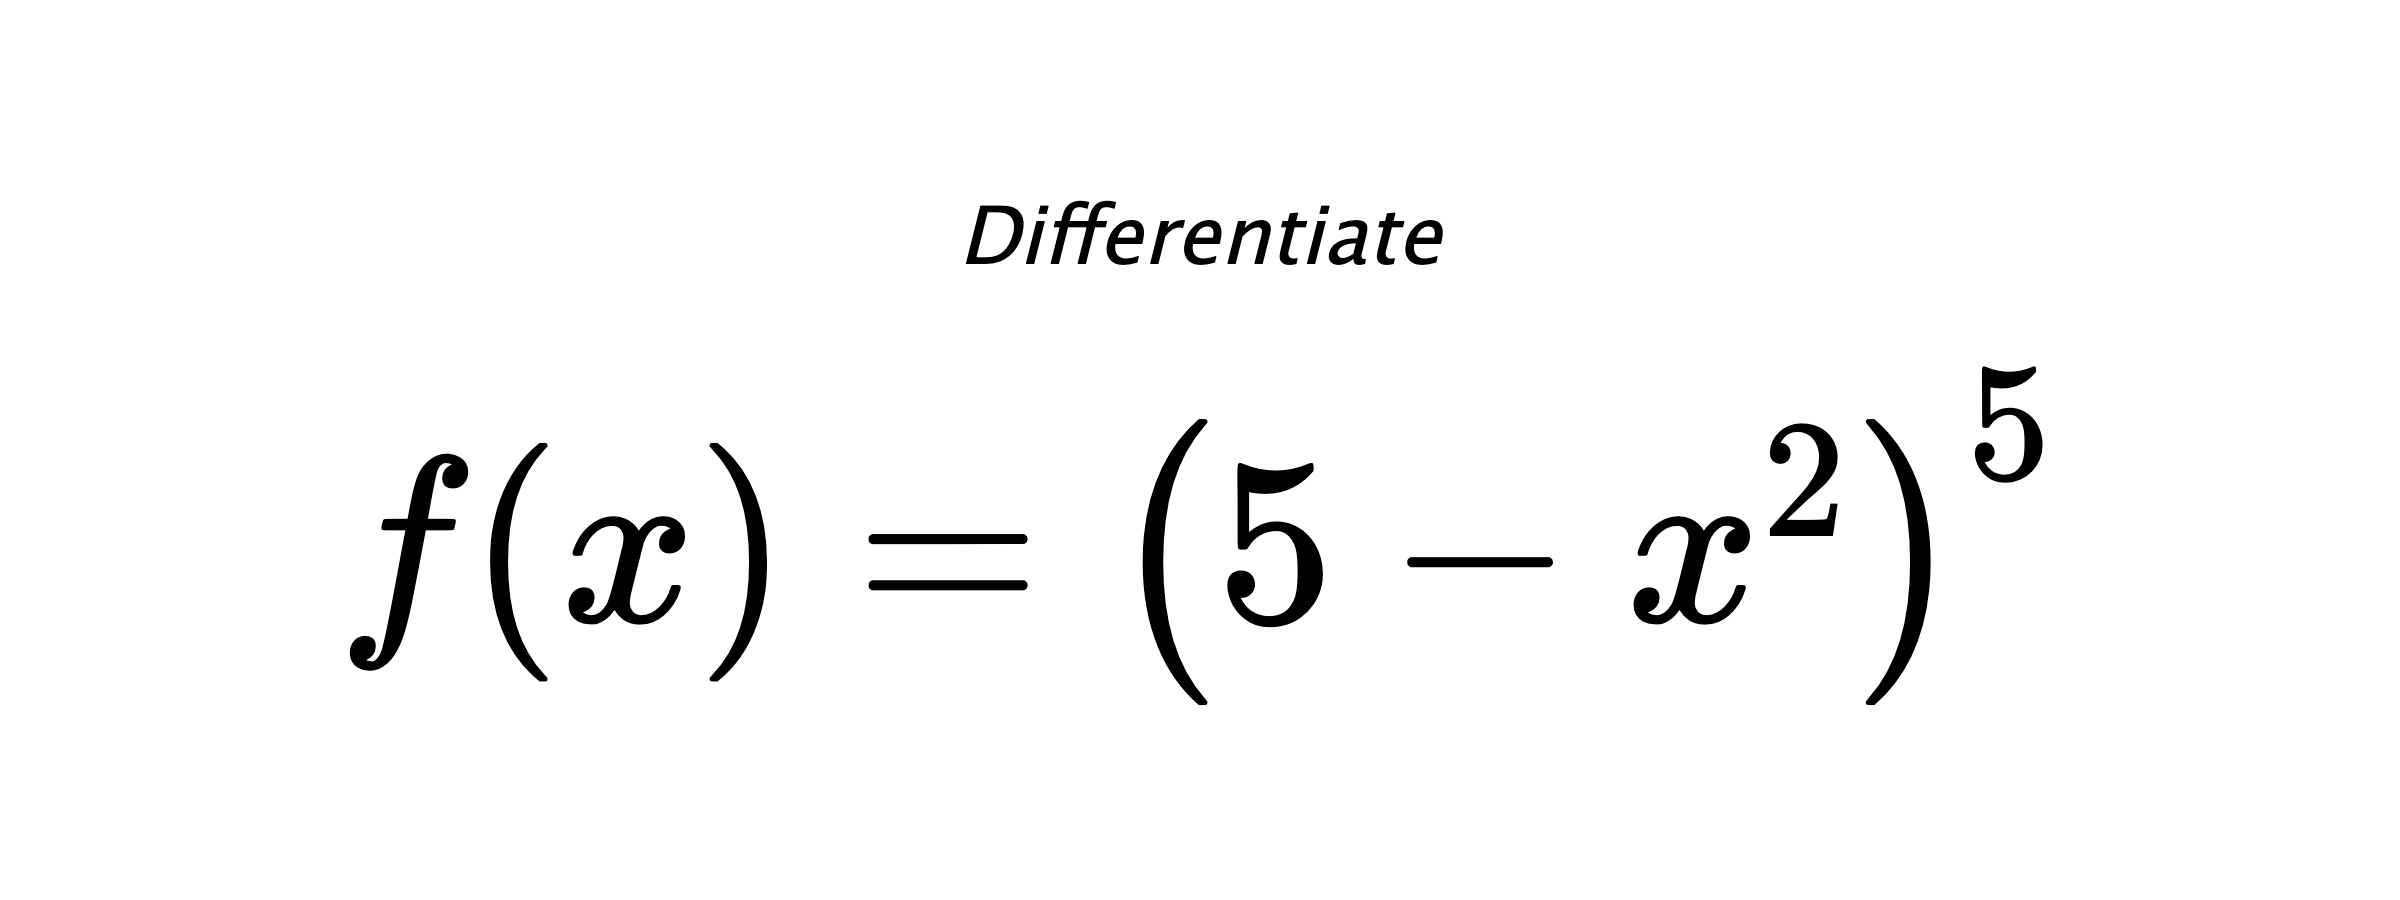 Differentiate $ f(x) = \left(5 - x^{2}\right)^{5} $